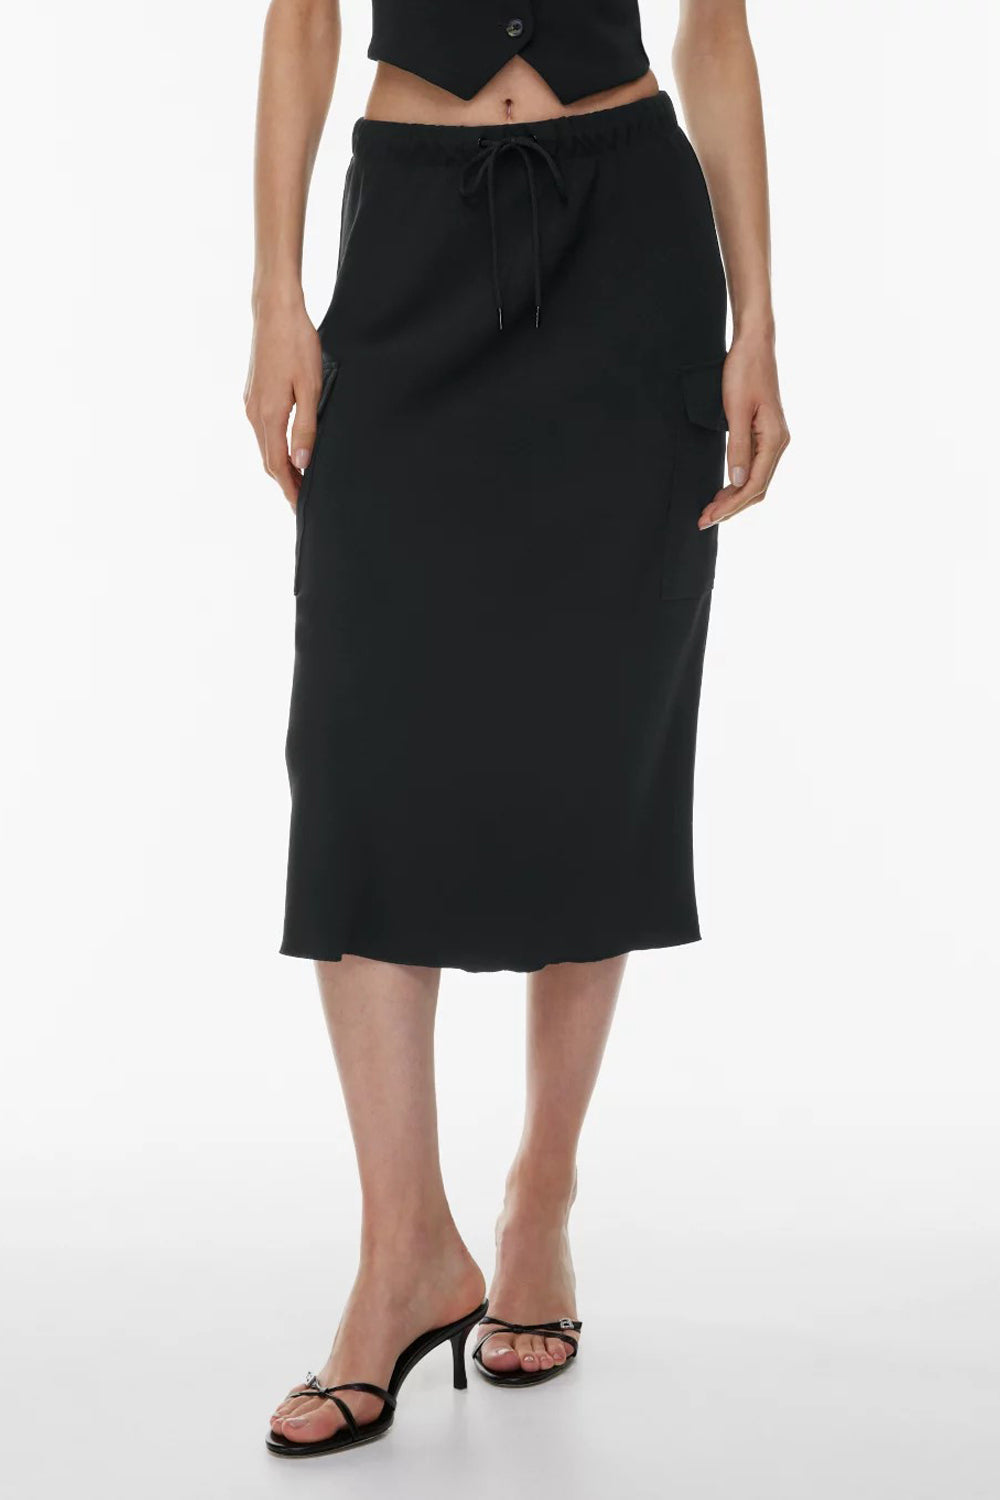 Lustrous black skirt